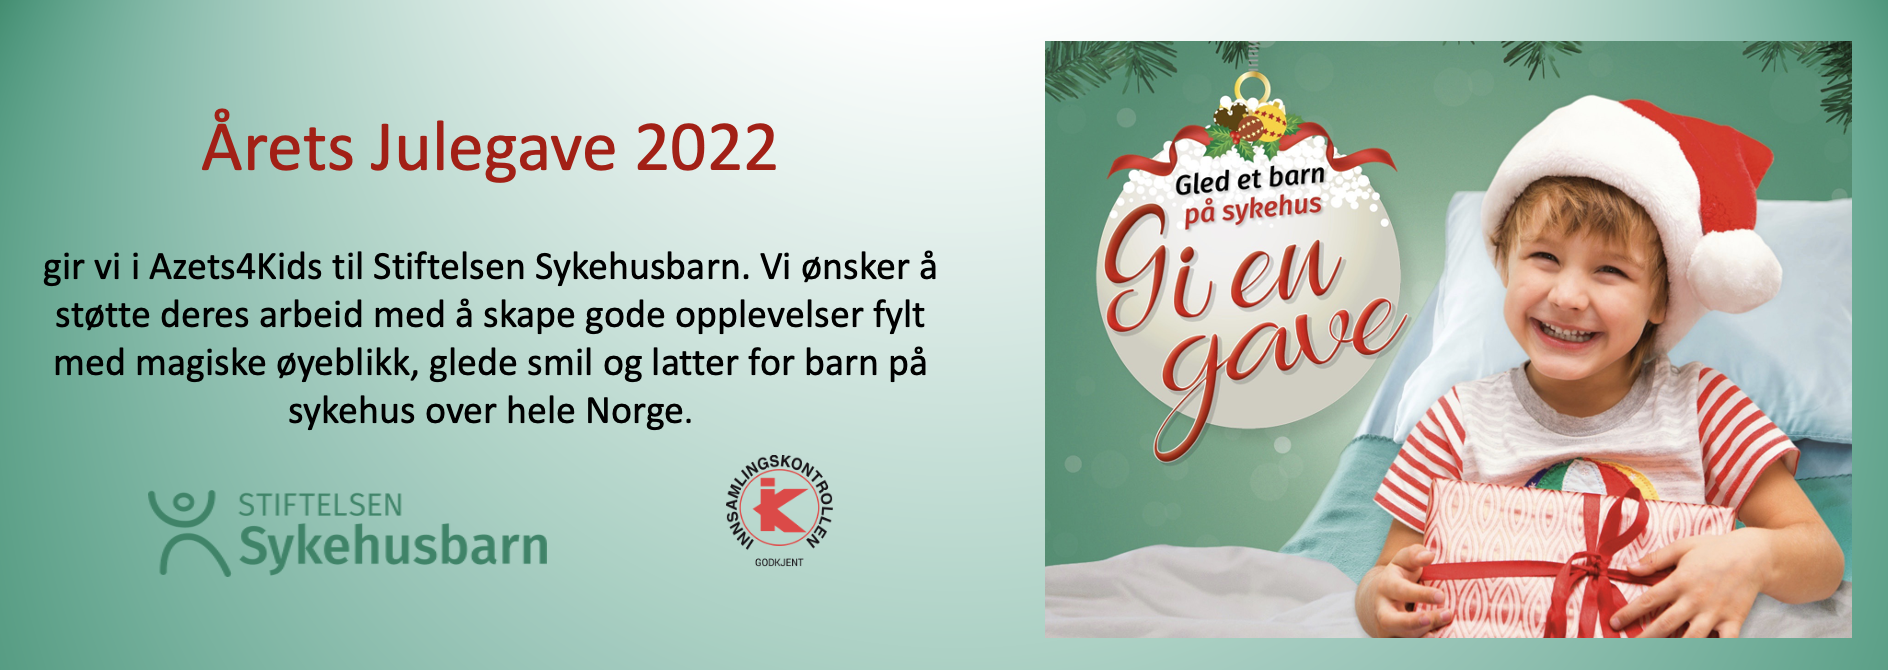 Årets Julegave 2022 fra Azets4Kids.png